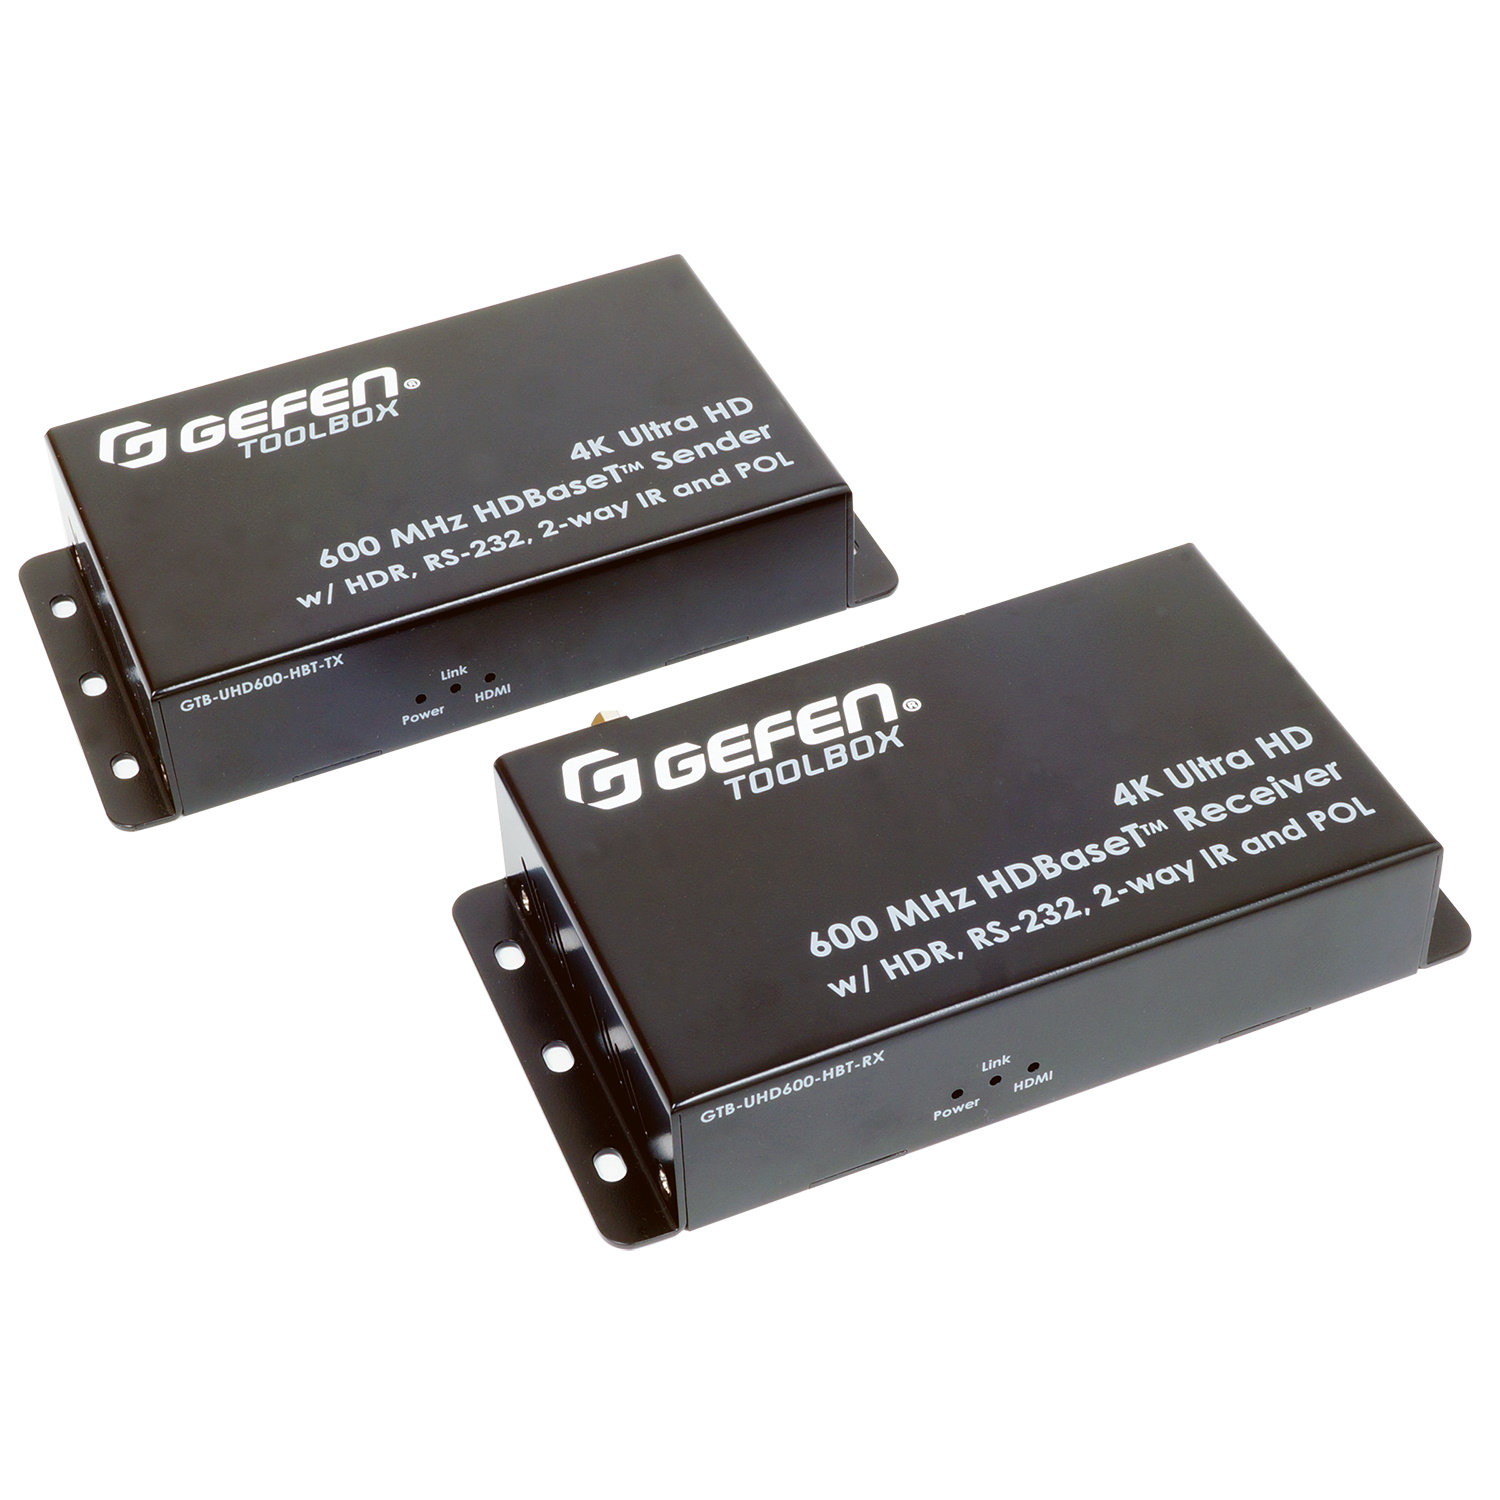 HDMI коммутаторы, разветвители, повторители Gefen GTB-UHD600-HBT hdmi коммутаторы разветвители повторители gefen ext uhd600 1sc